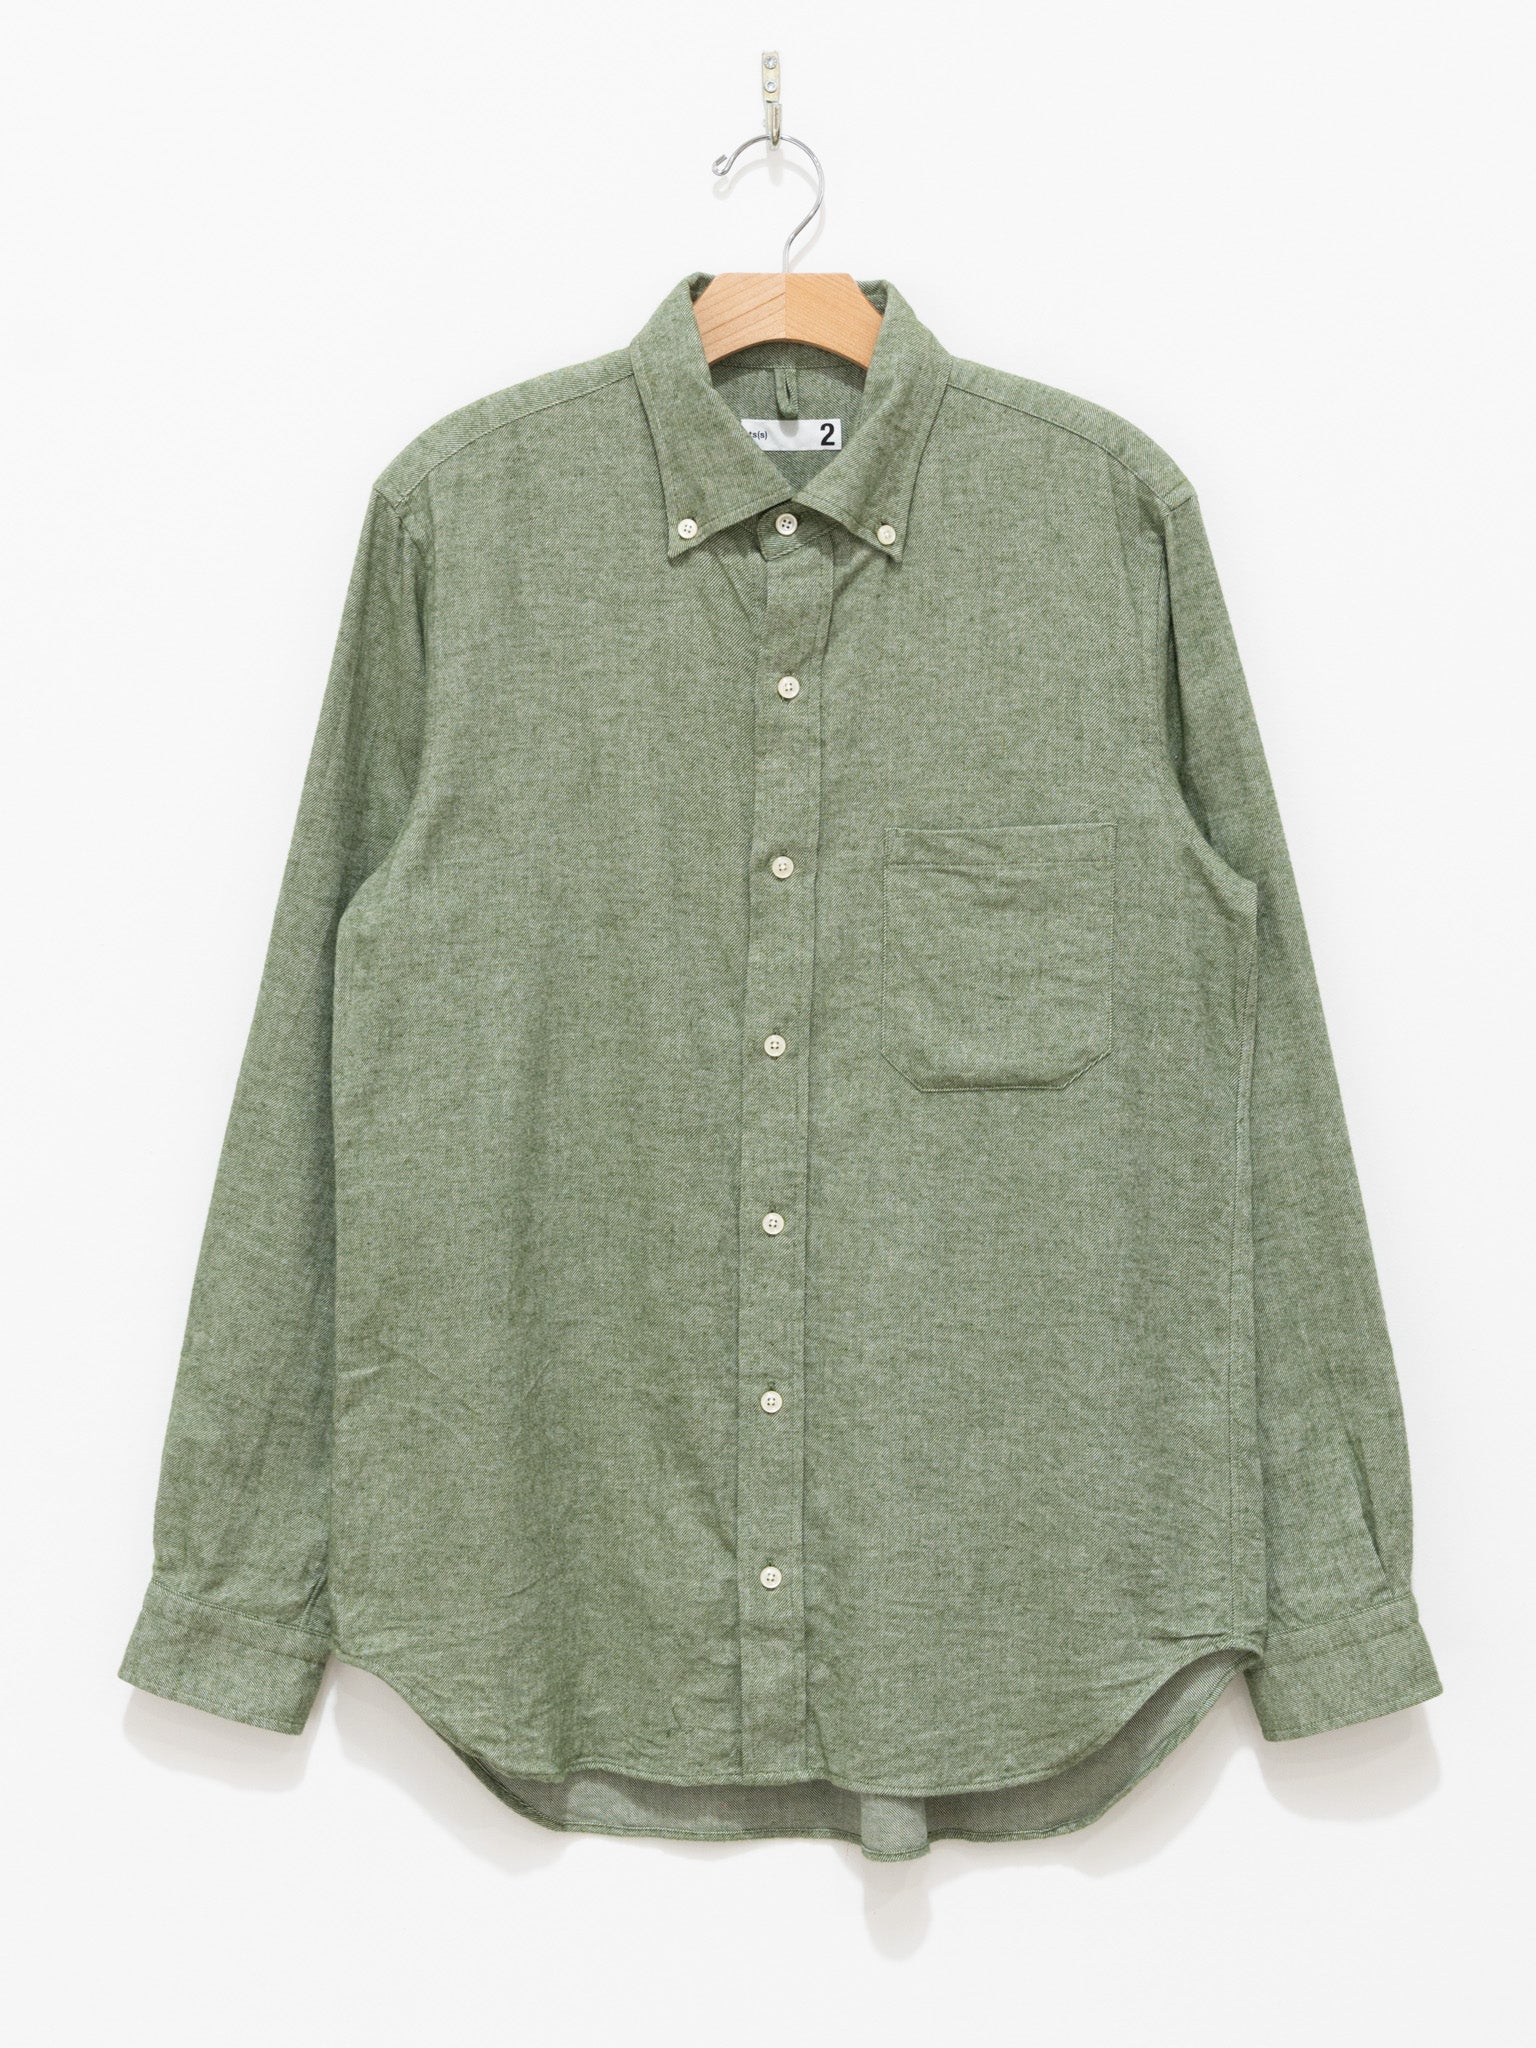 Namu Shop - ts(s) Chambray Cotton Flannel BD Shirt - Green